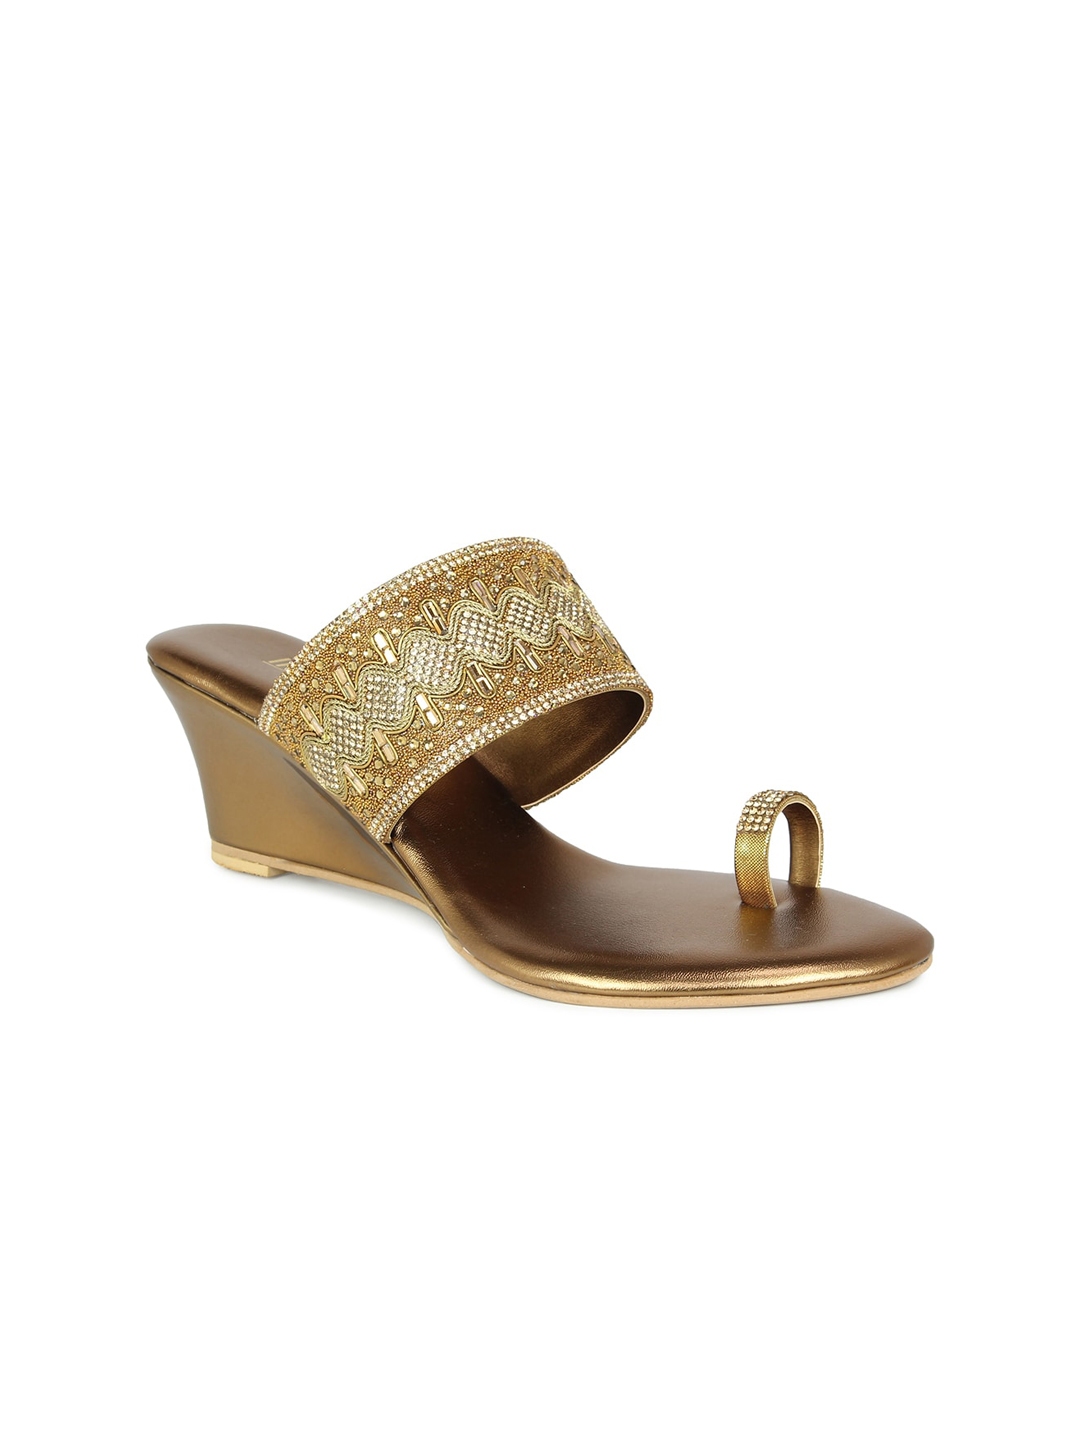 Buy Inc 5 Gold Toned Ethnic Embellished Wedge Heels - Heels for Women ...